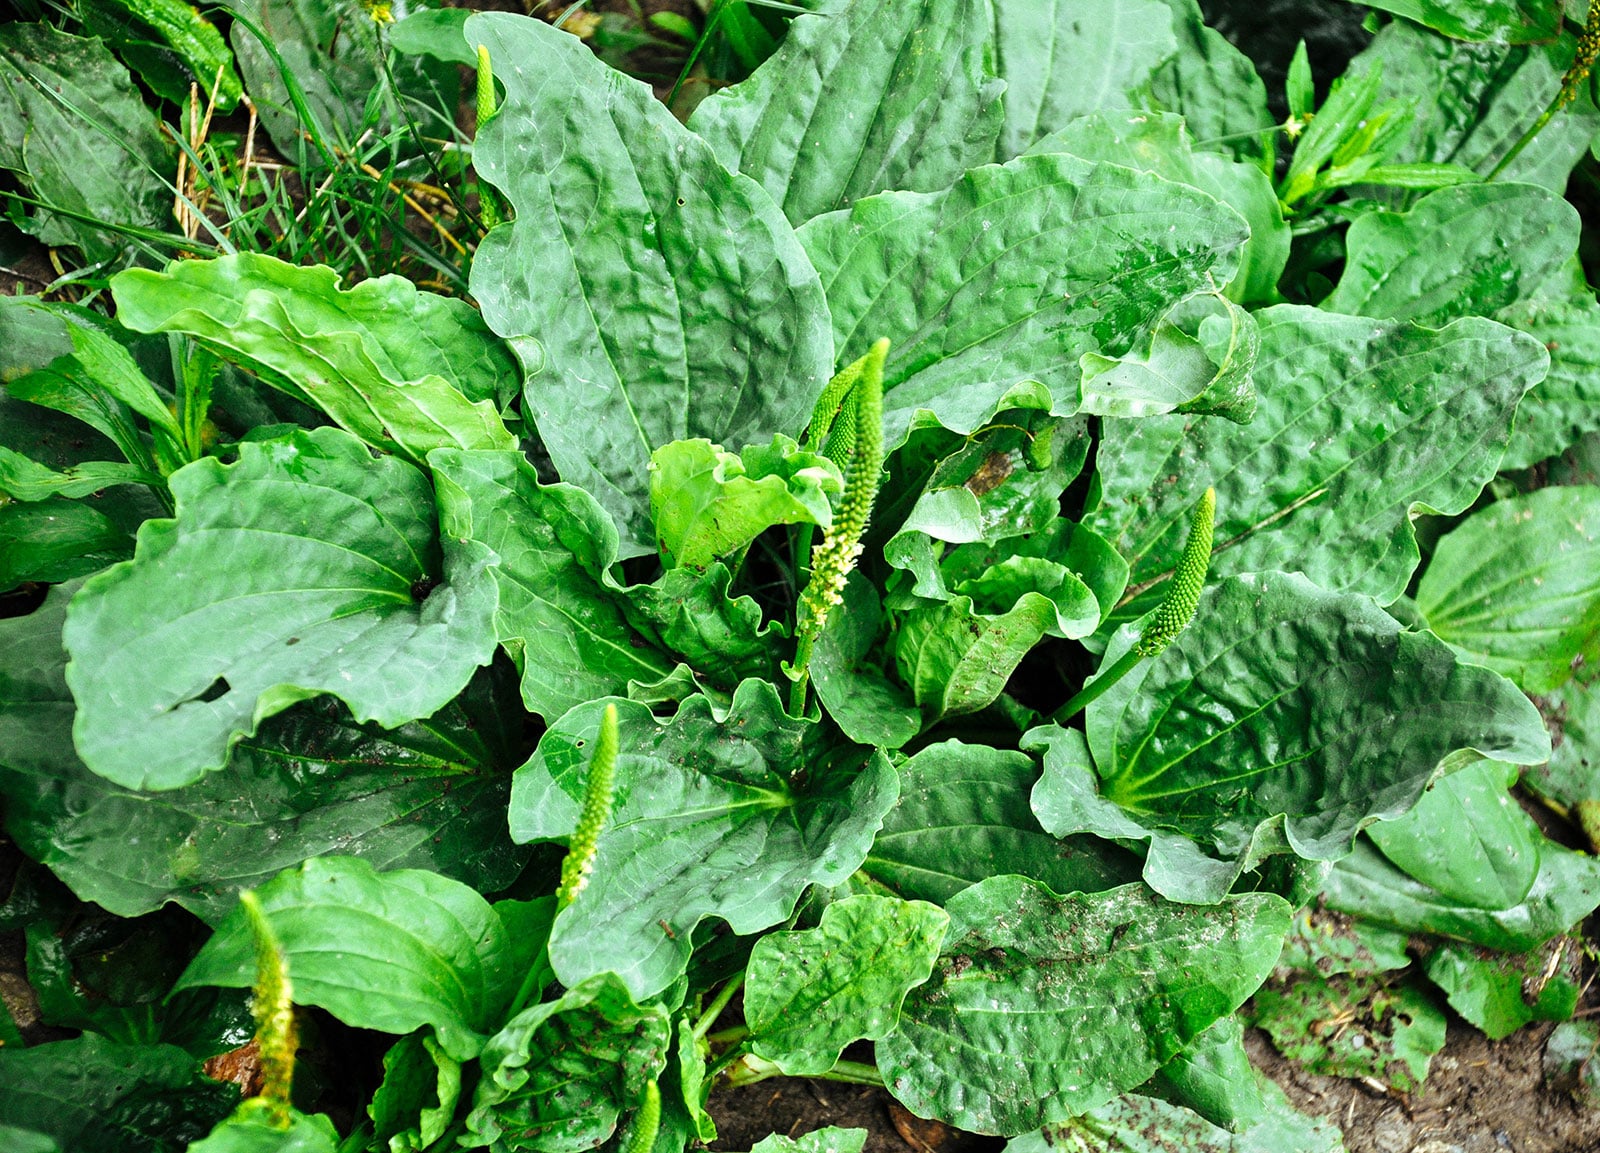 Broadleaf plantain growing as a weed